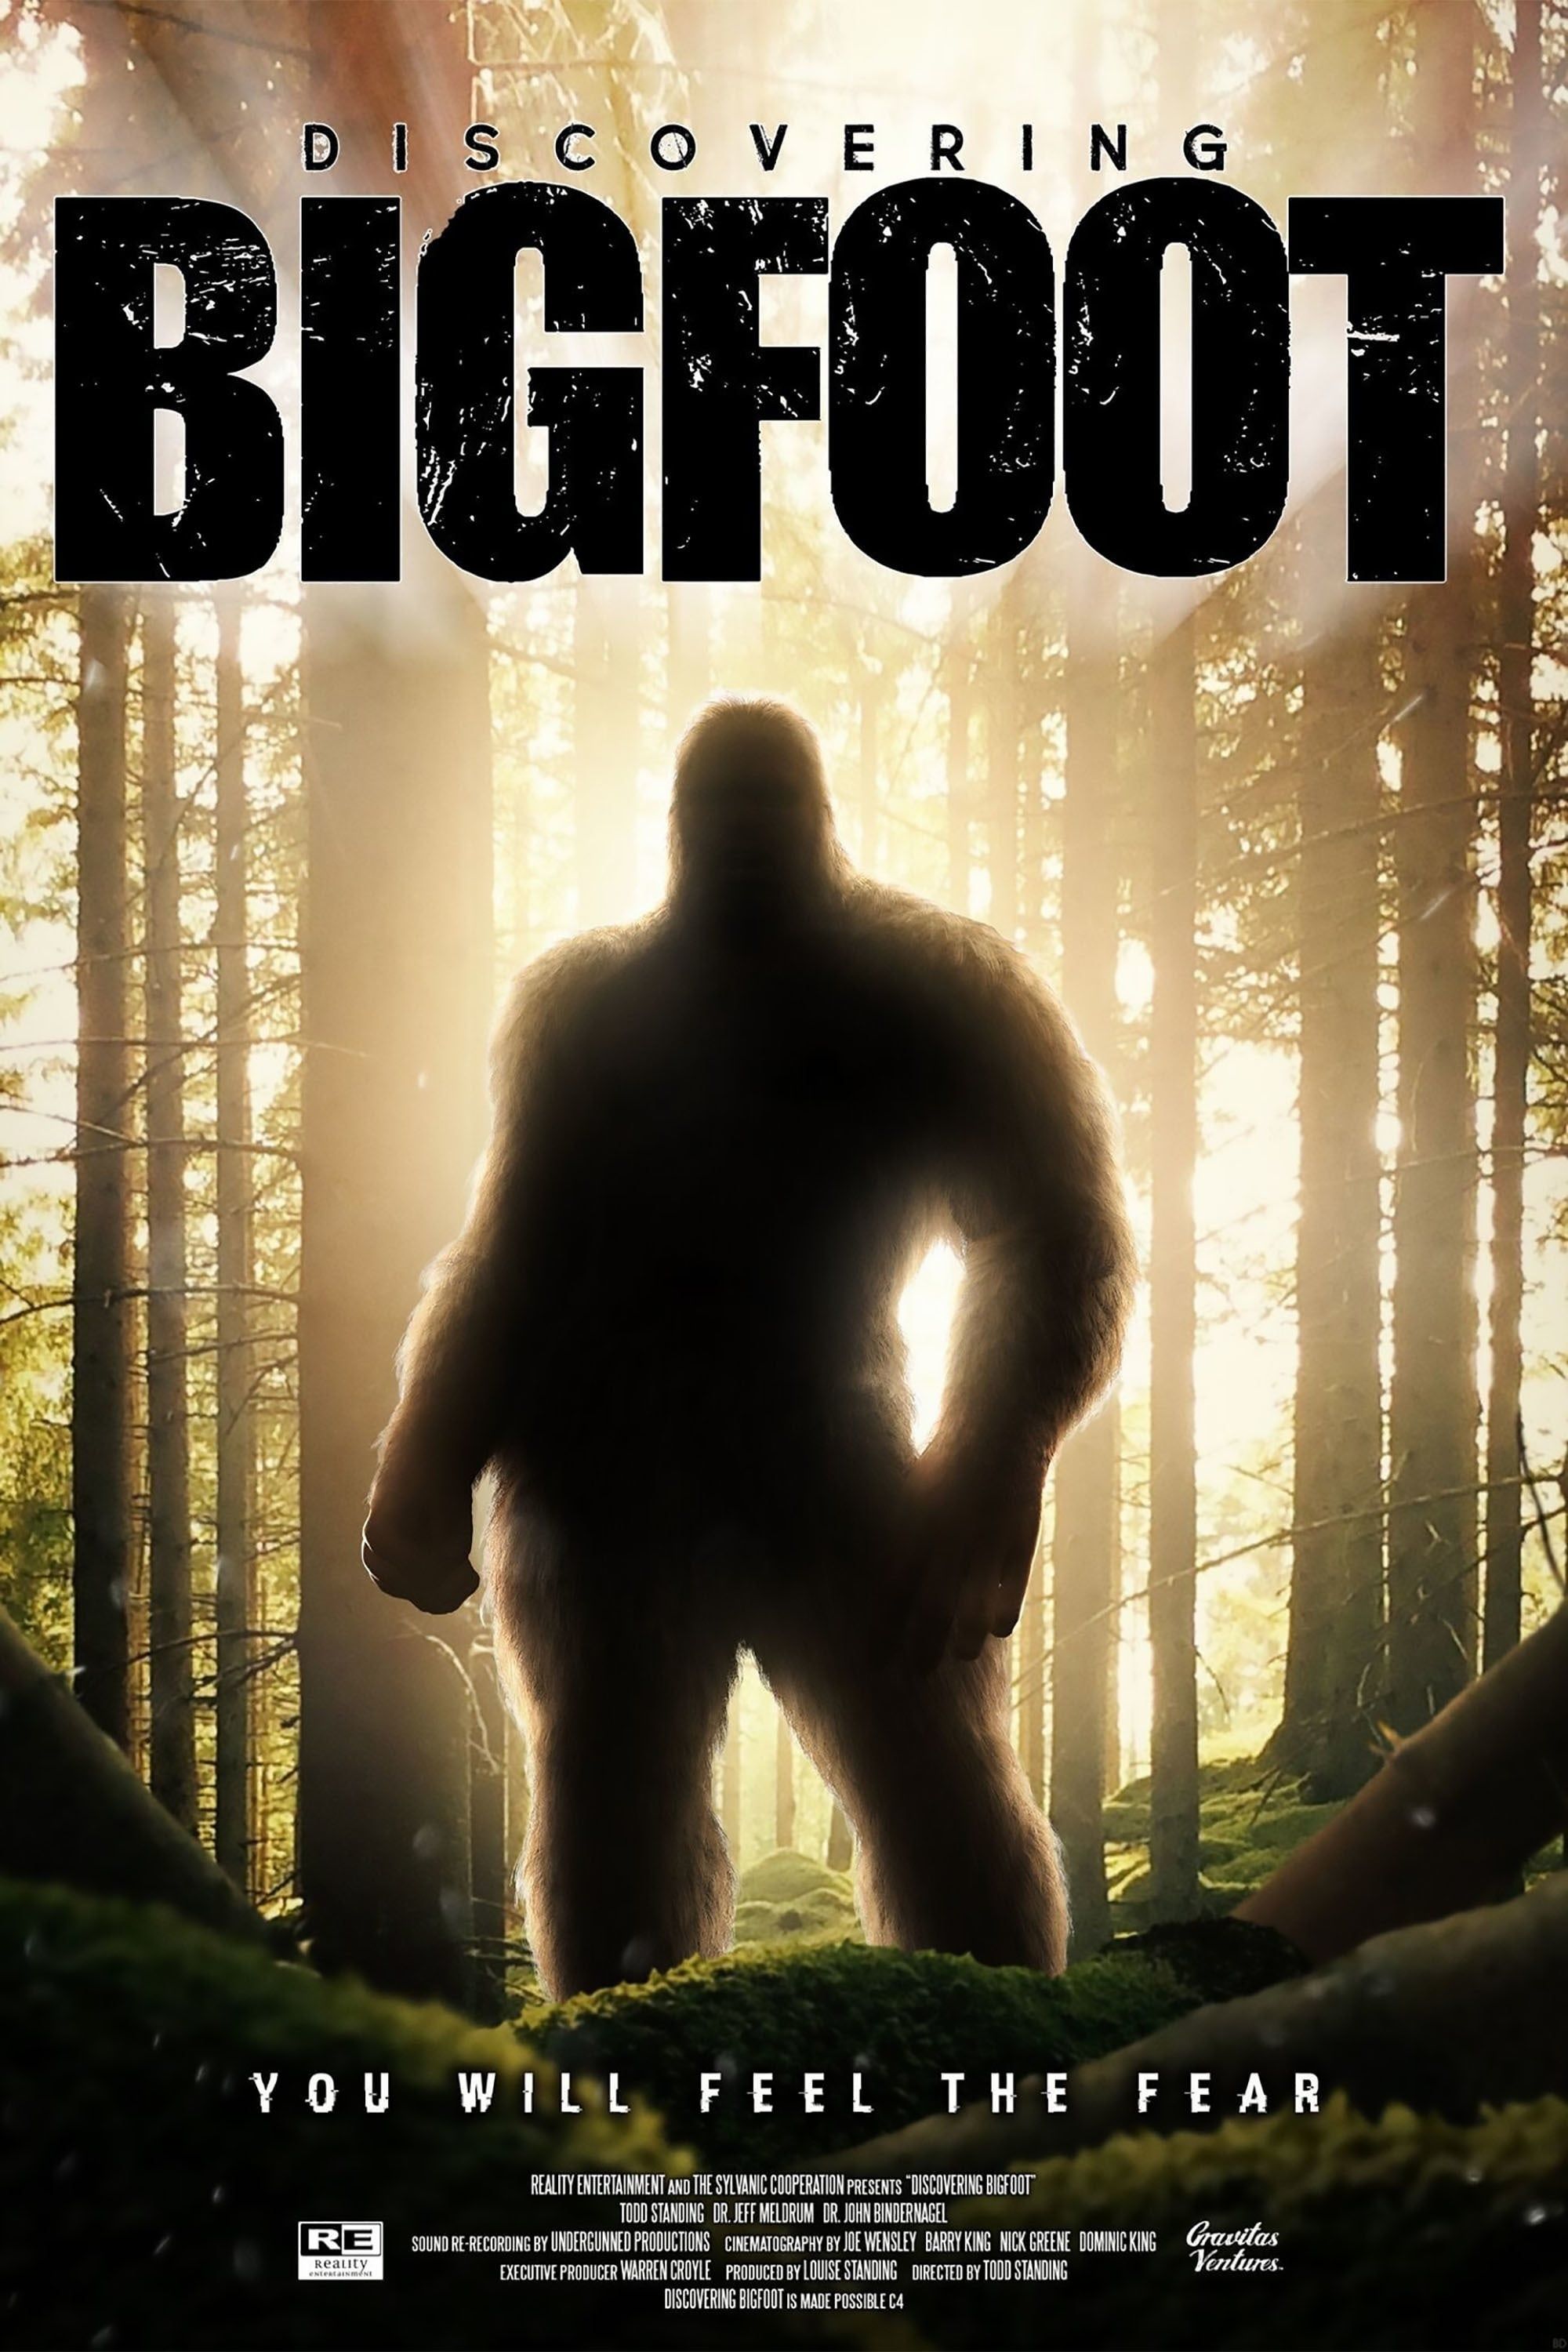 Discovereing Bigfoot